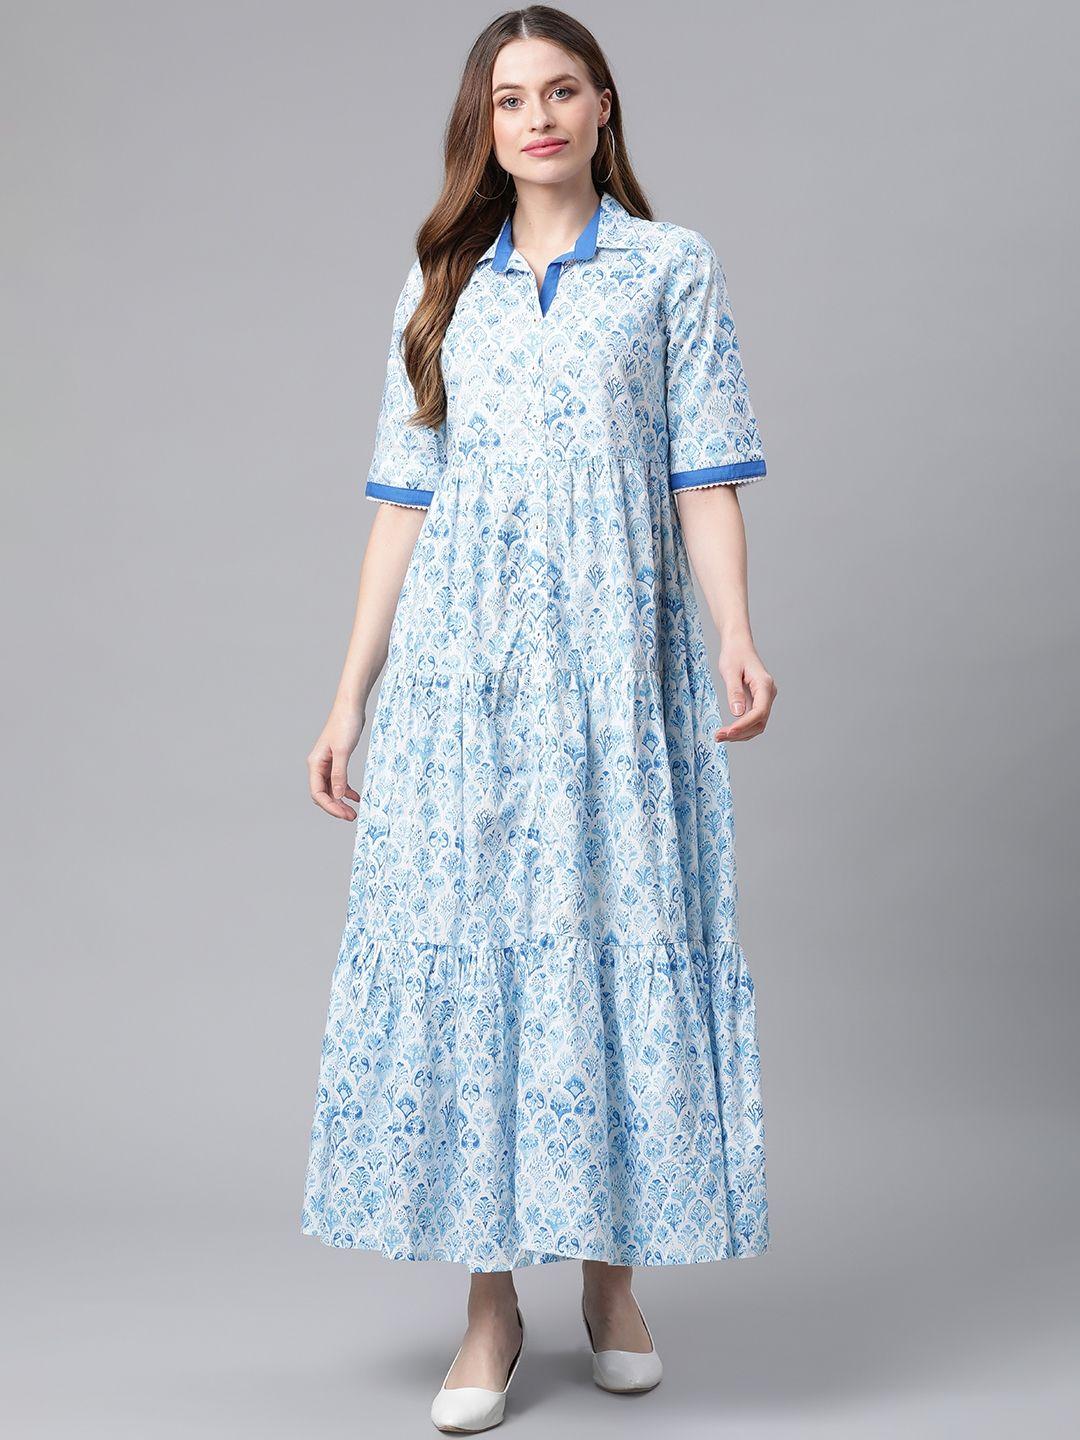 rangriti women blue printed maxi dress